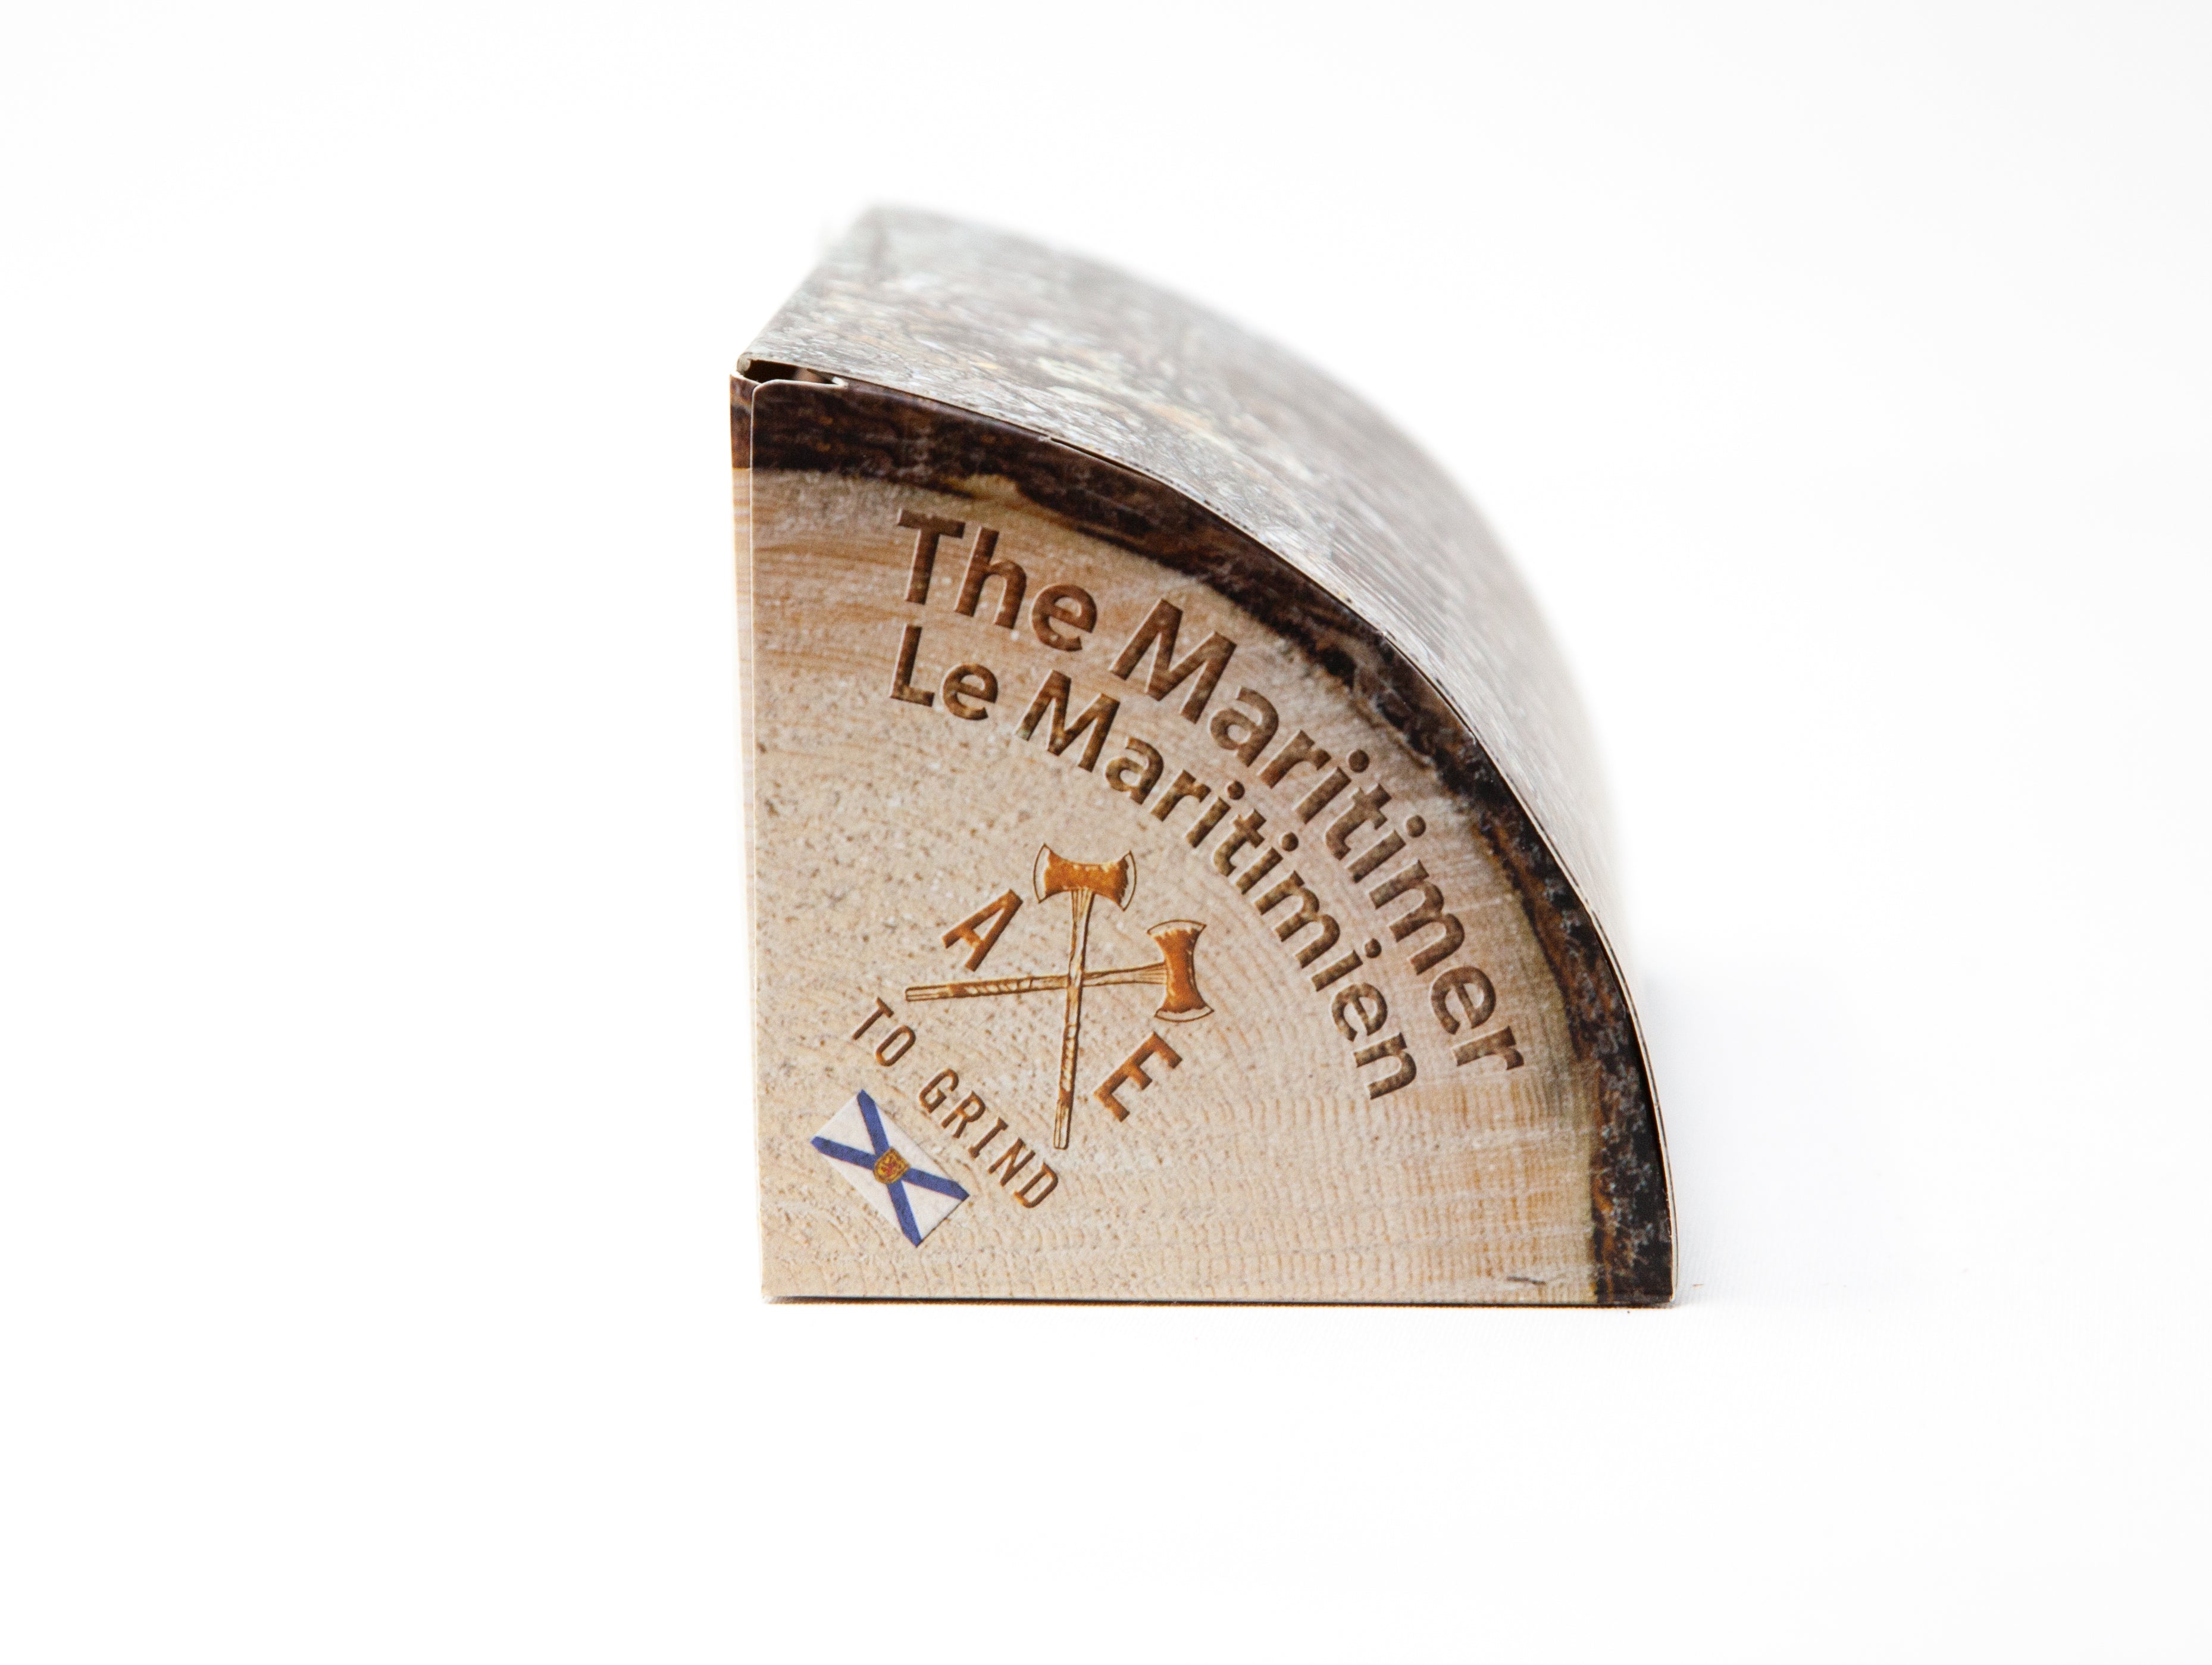 The Maritimer "Split-Log" Gift Pack